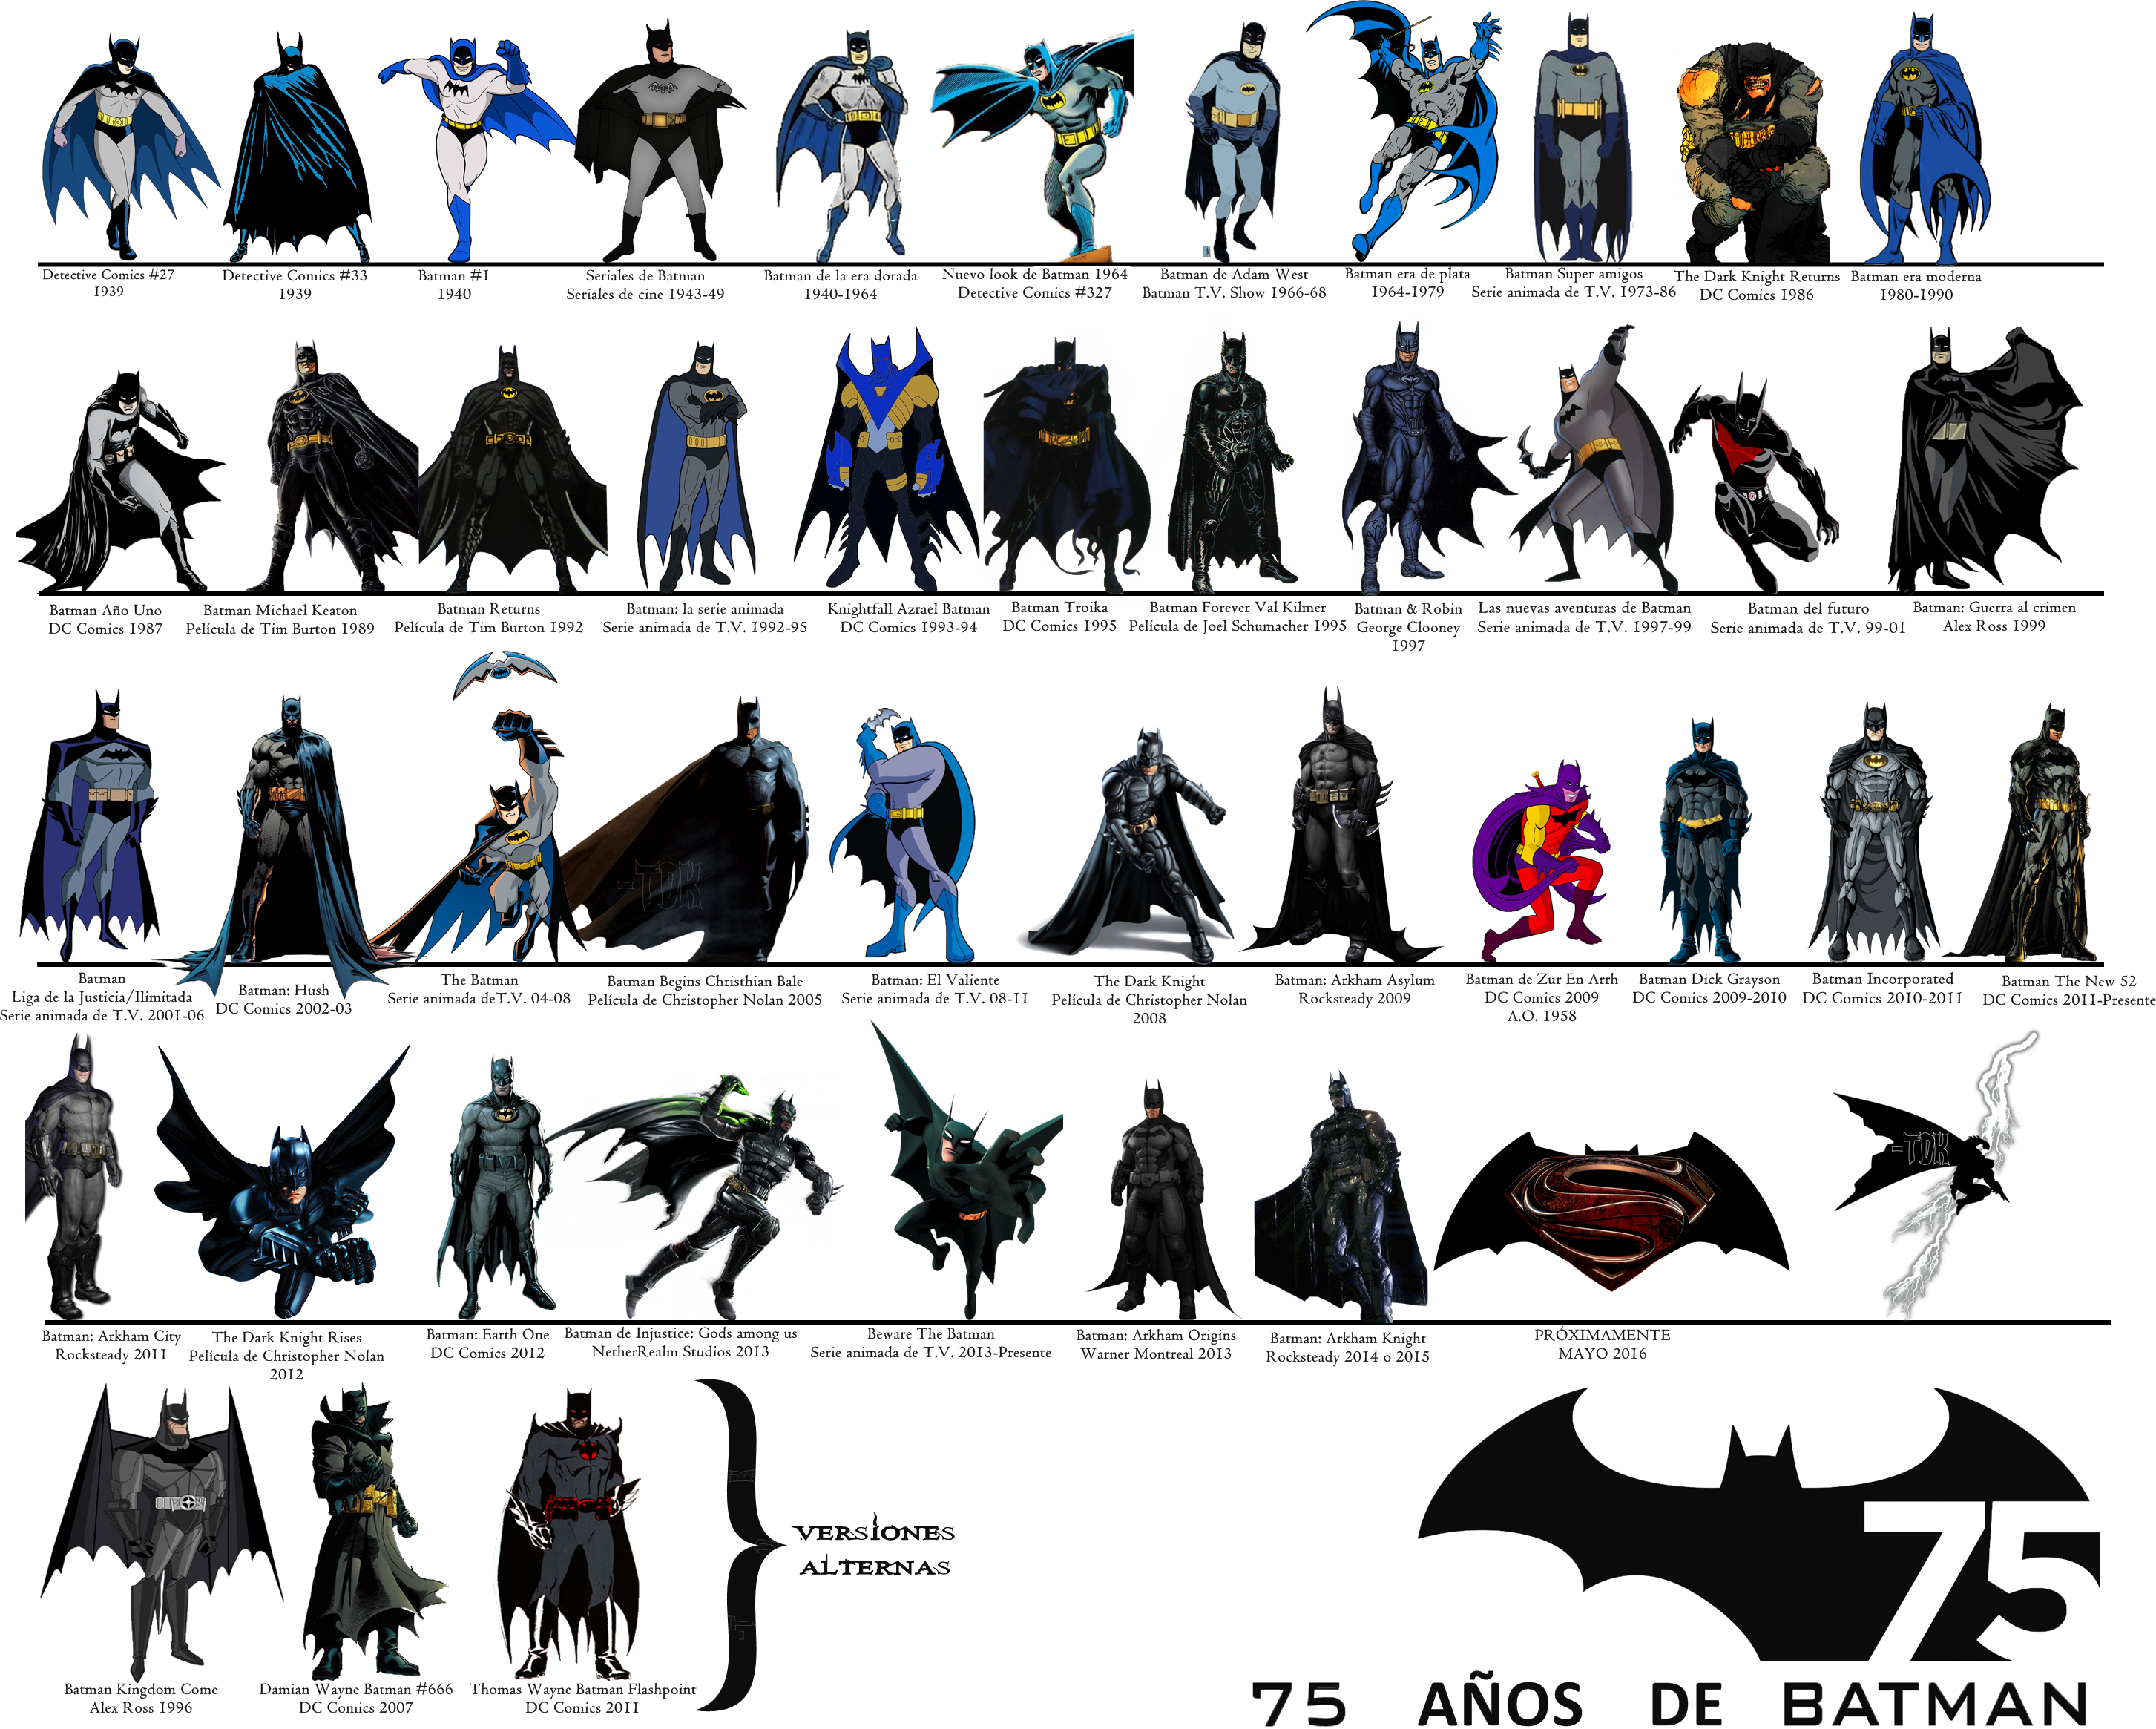 75 Years of Batman by Alexbadass on DeviantArt